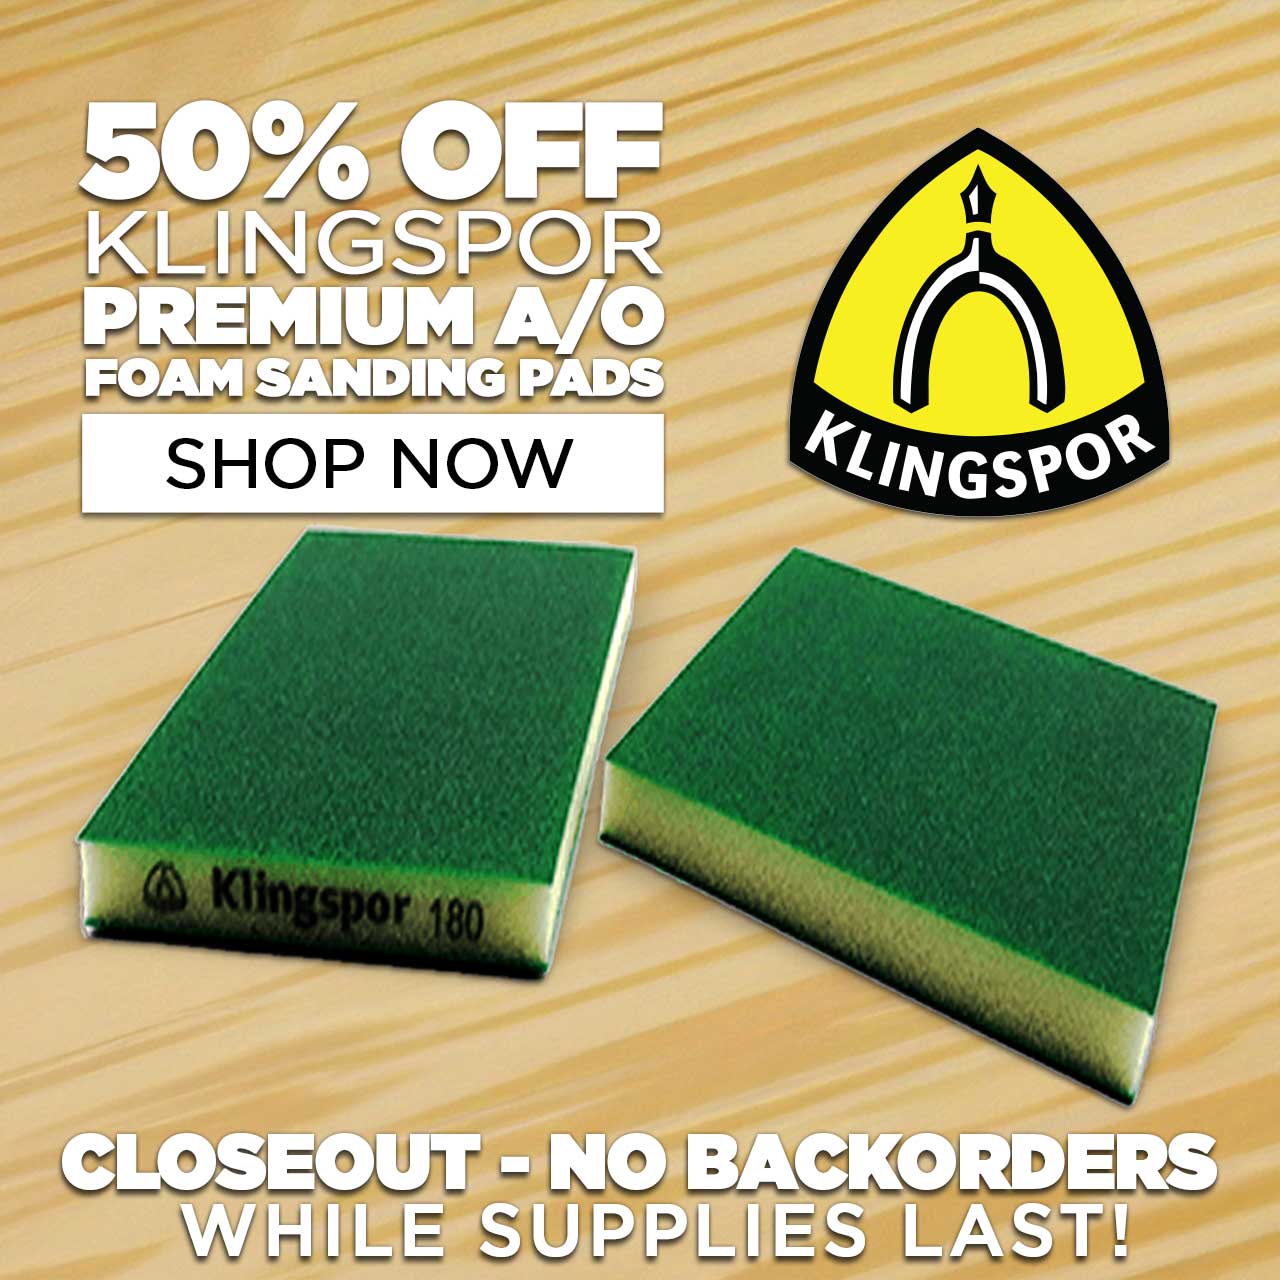 50% Off Klingspor Premium A/O Foam Sanding Pads